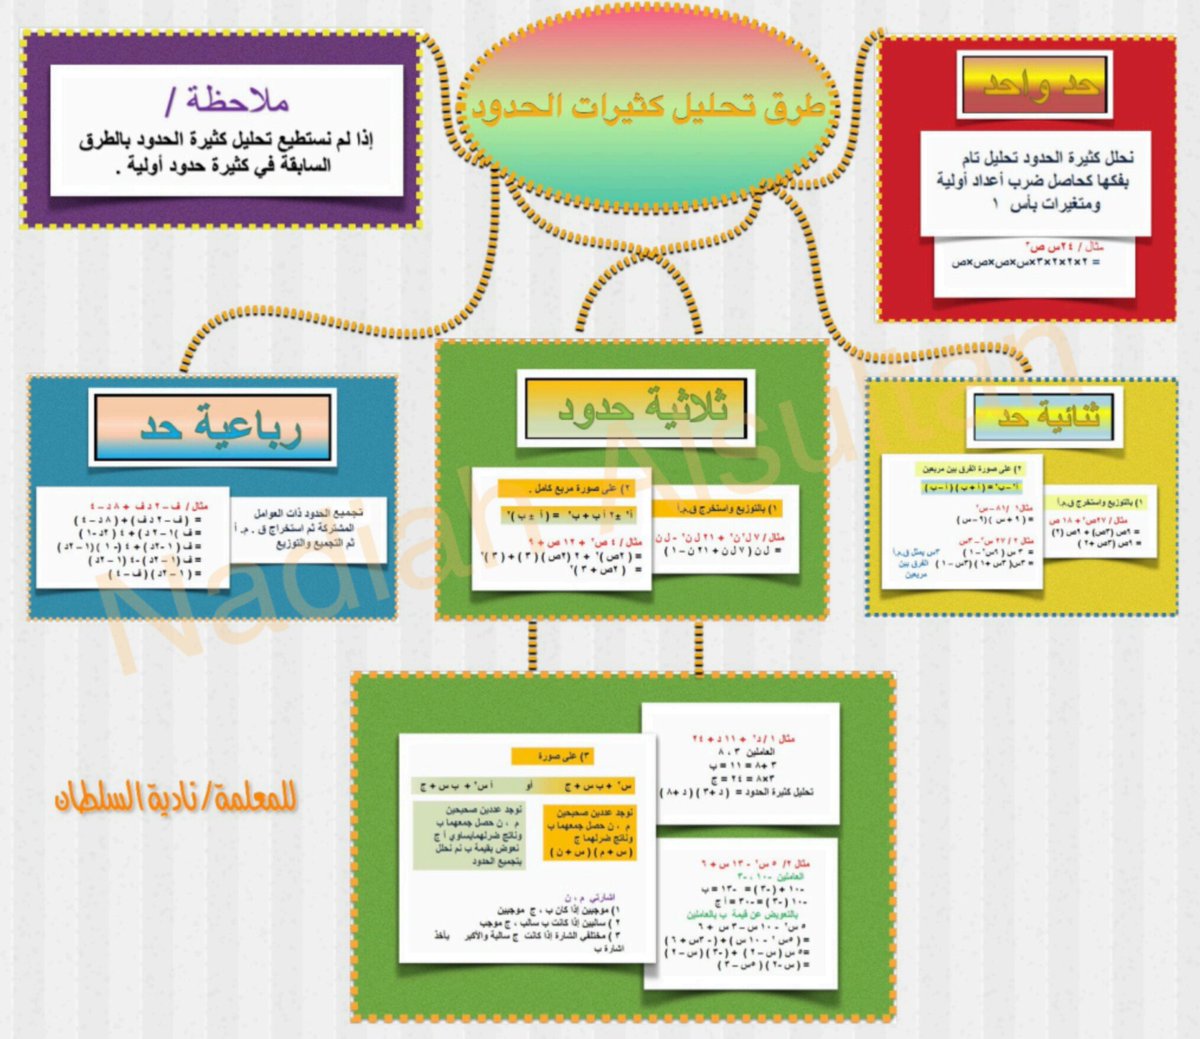 Nadiah Kmj En Twitter خريطة مفاهيم لطرق تحليل كثيرات الحدود للمعلمة نادية السلطان